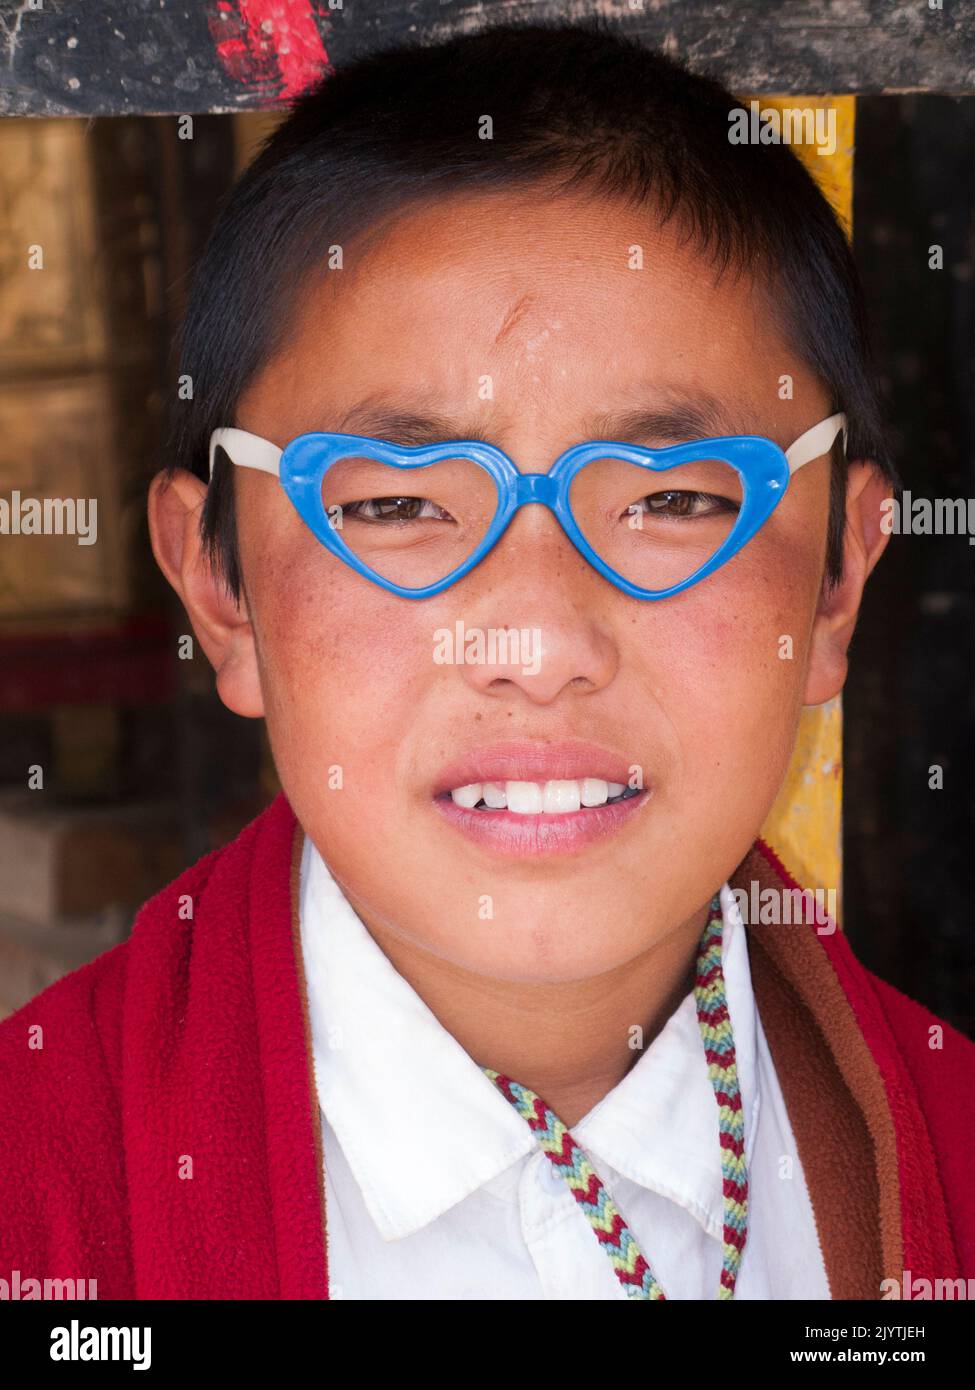 Portrait d'enfant local / enfant d'héritage tibétain portant des vêtements bouddhistes et aussi des lunettes de fantaisie avec un cadre en forme de deux coeurs, une personne qui vit en Chine, résident d'un petit village à l'extérieur de la ville antique de Songpan dans le nord de la province du Sichuan. PRC. Chine (126) Banque D'Images